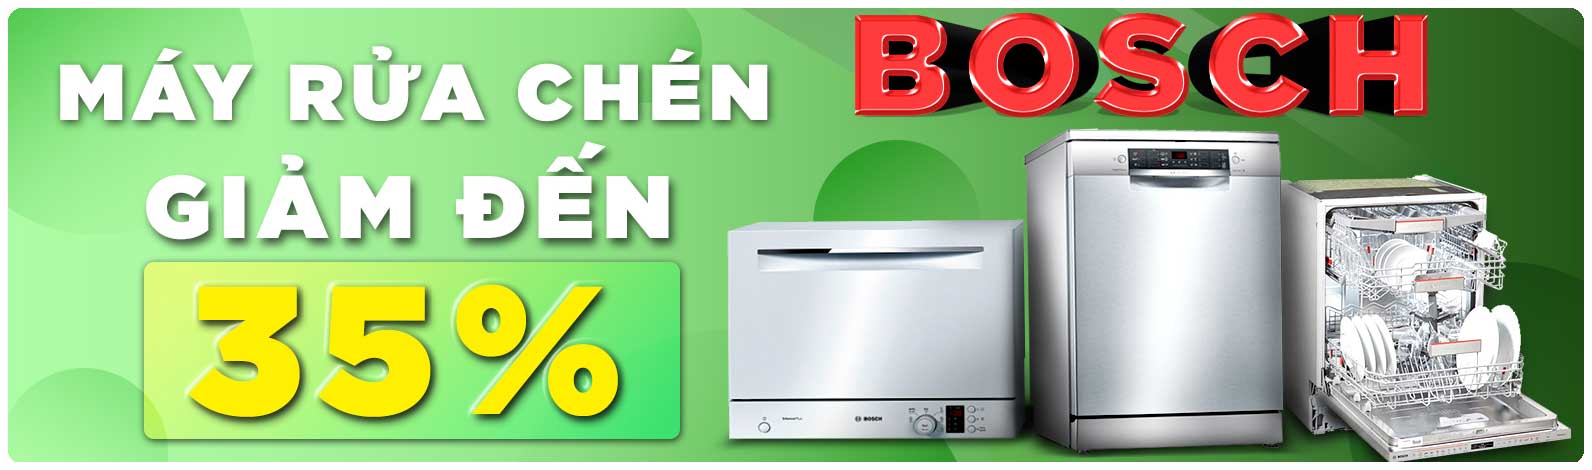 Ưu đãi giảm giá máy rửa chén Bosch đến 35% tại King Home Việt Nam